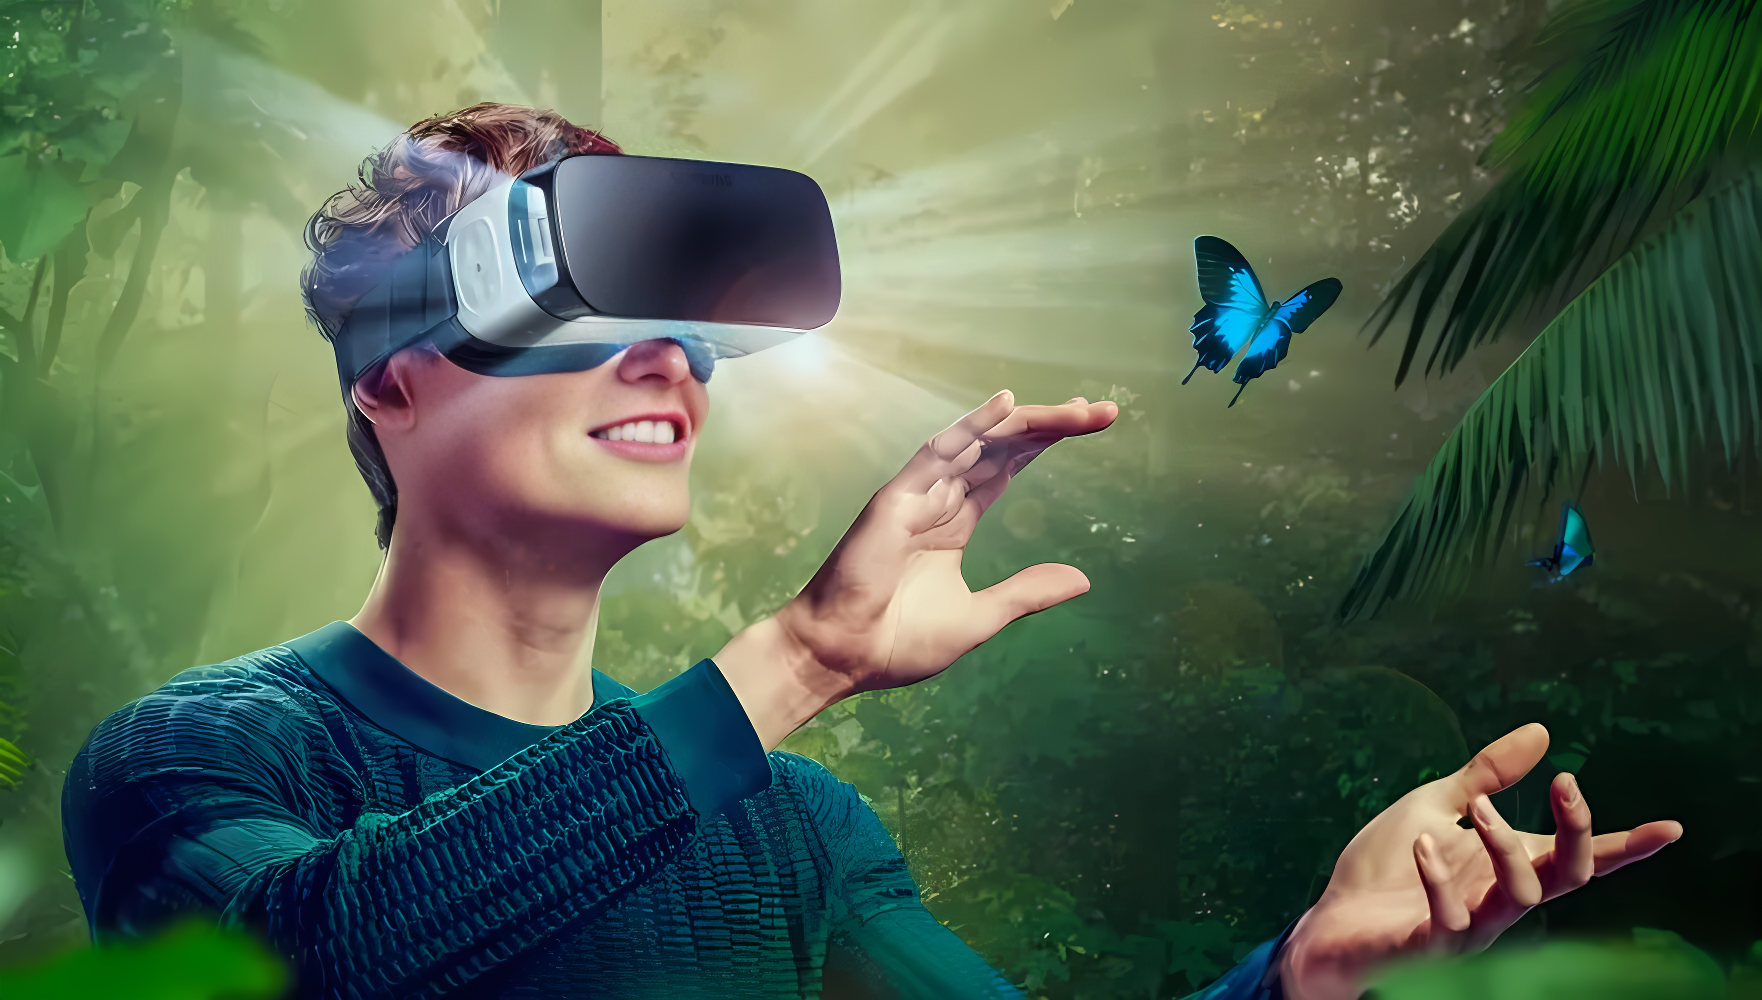 一位年轻人戴着虚拟现实头盔，似乎在体验一个热带雨林的场景，他面带微笑，伸手触摸一只蝴蝶。